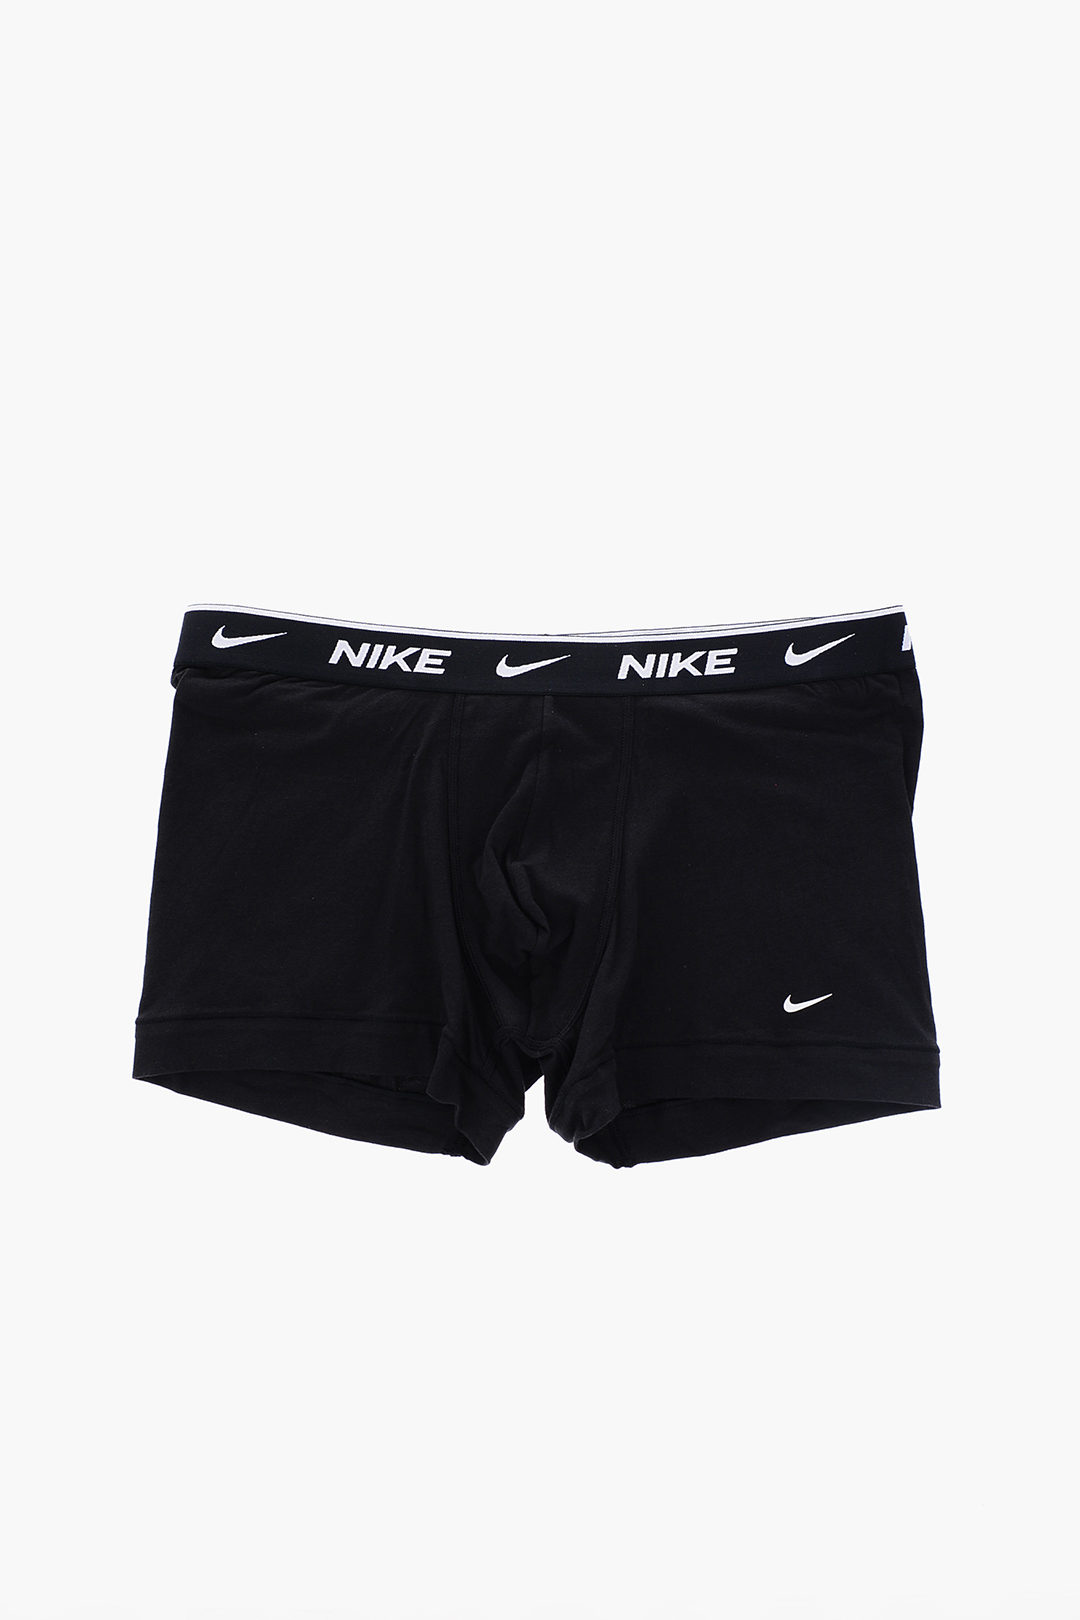 Nike 3 pack Mens Cotton Stretch DRI-FIT Briefs in Black / Multi colour S M  L XL